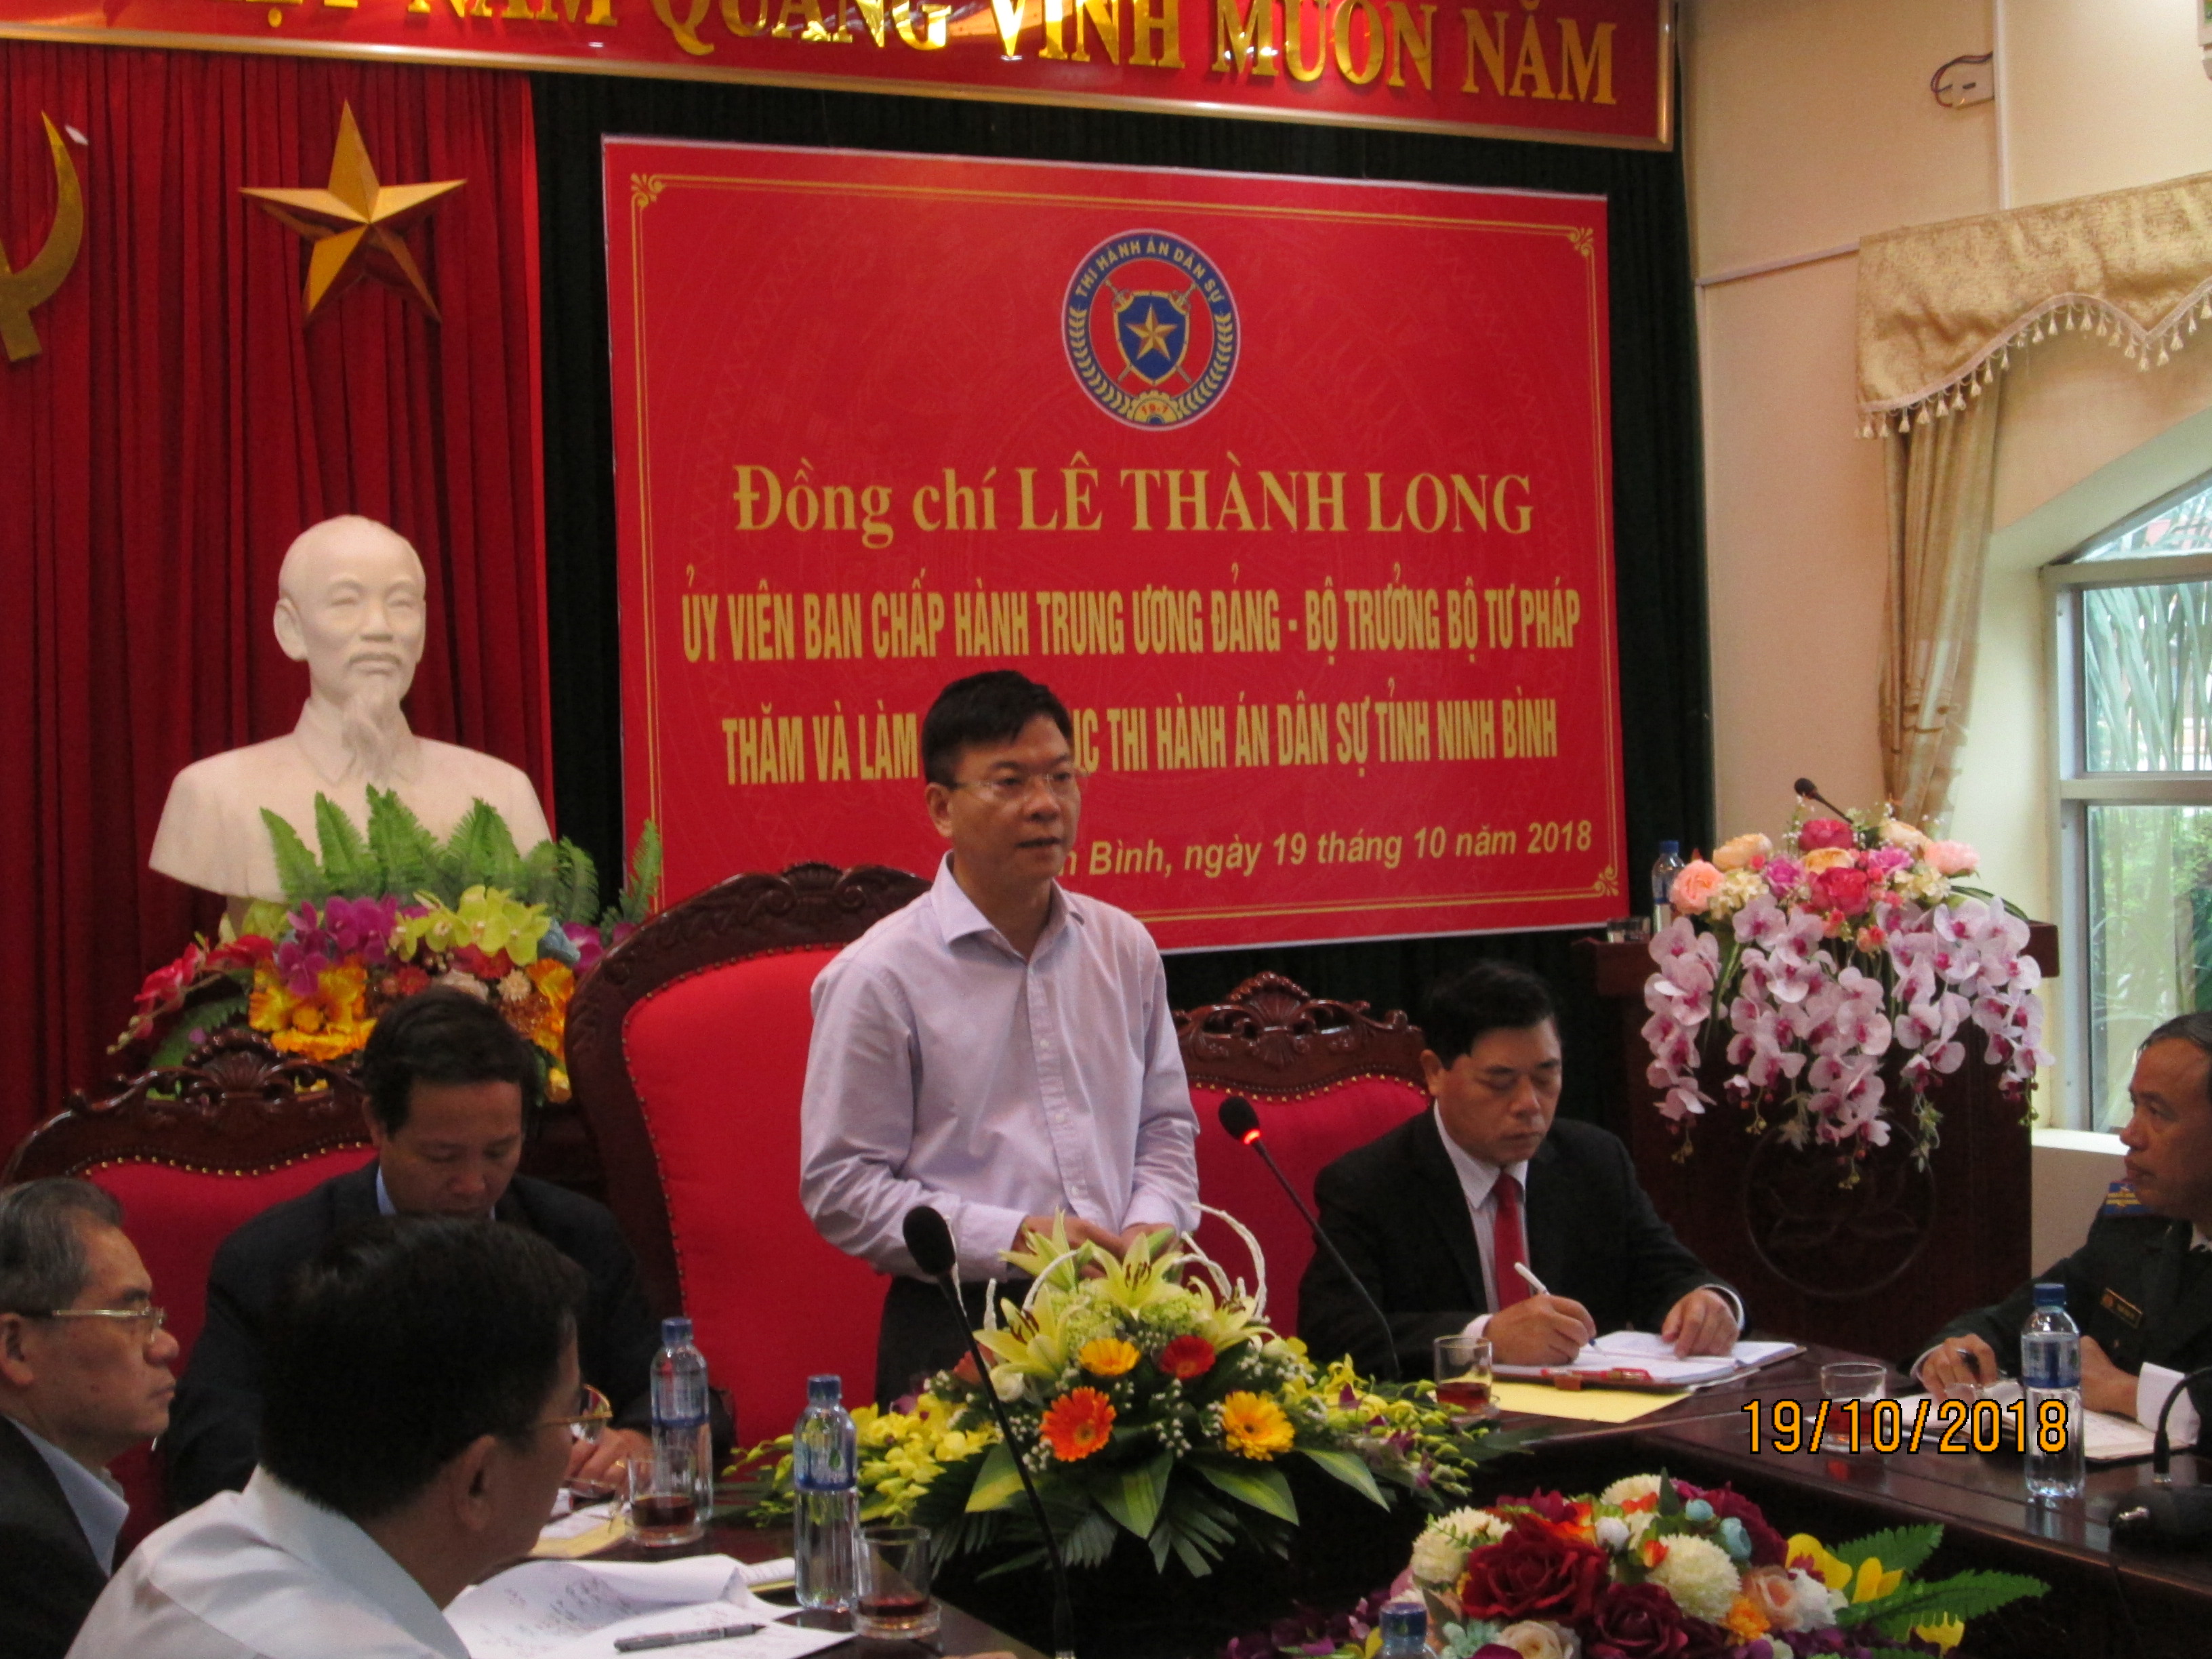 Bộ trưởng Bộ Tư pháp Lê Thành Long thăm và làm việc tại Cục Thi hành án dân sự tỉnh Ninh Bình.